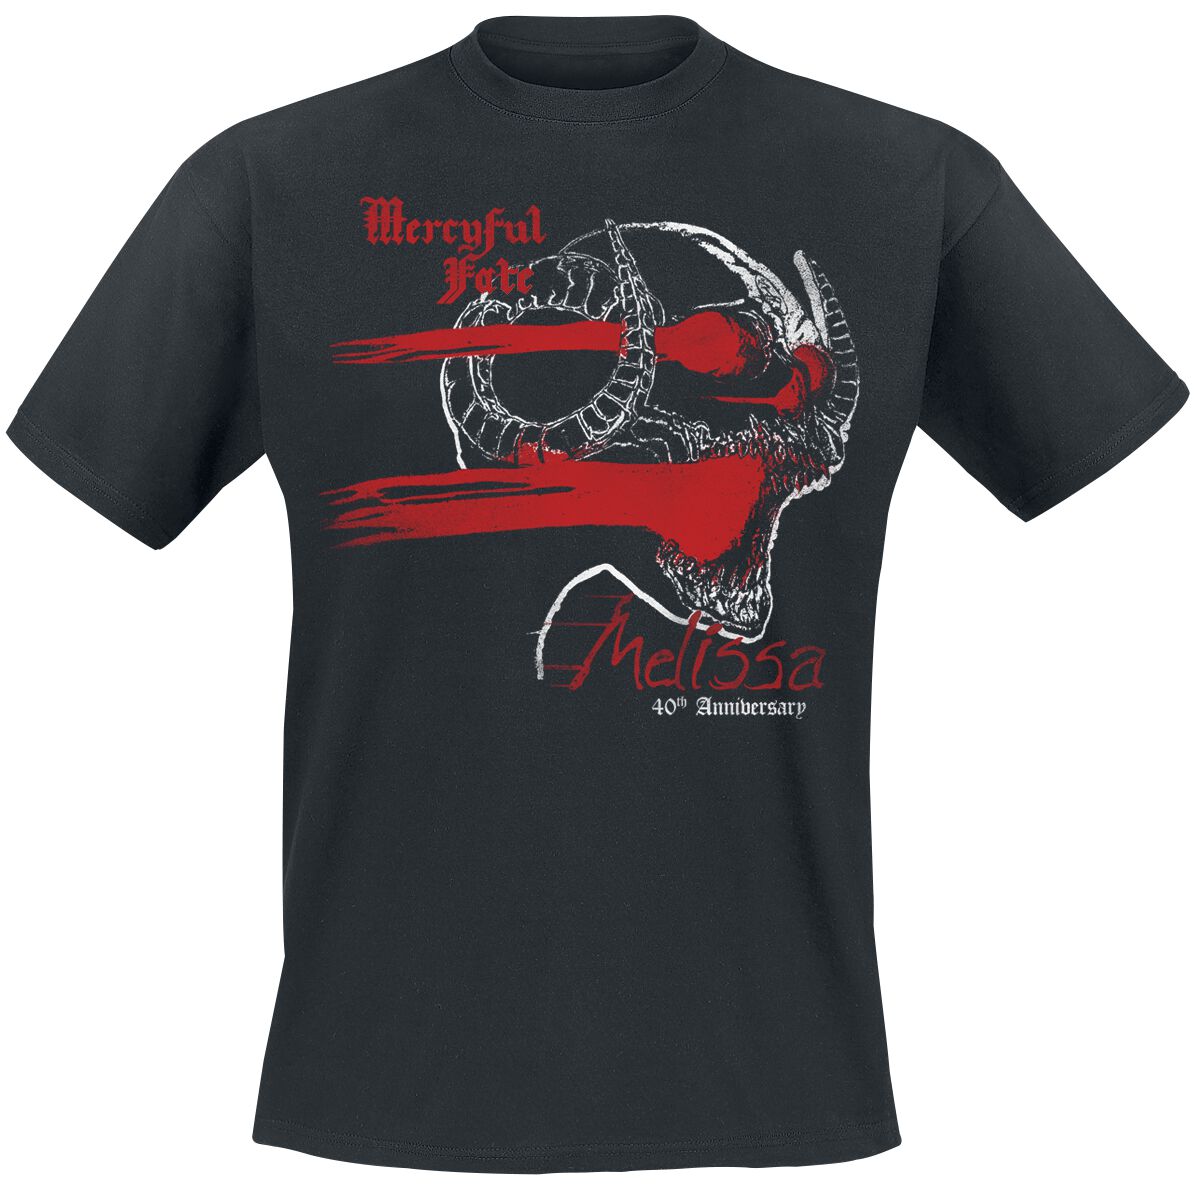 Mercyful Fate T-Shirt - Melissa 40th Anniversary Cross - M bis 3XL - für Männer - Größe M - schwarz  - Lizenziertes Merchandise!